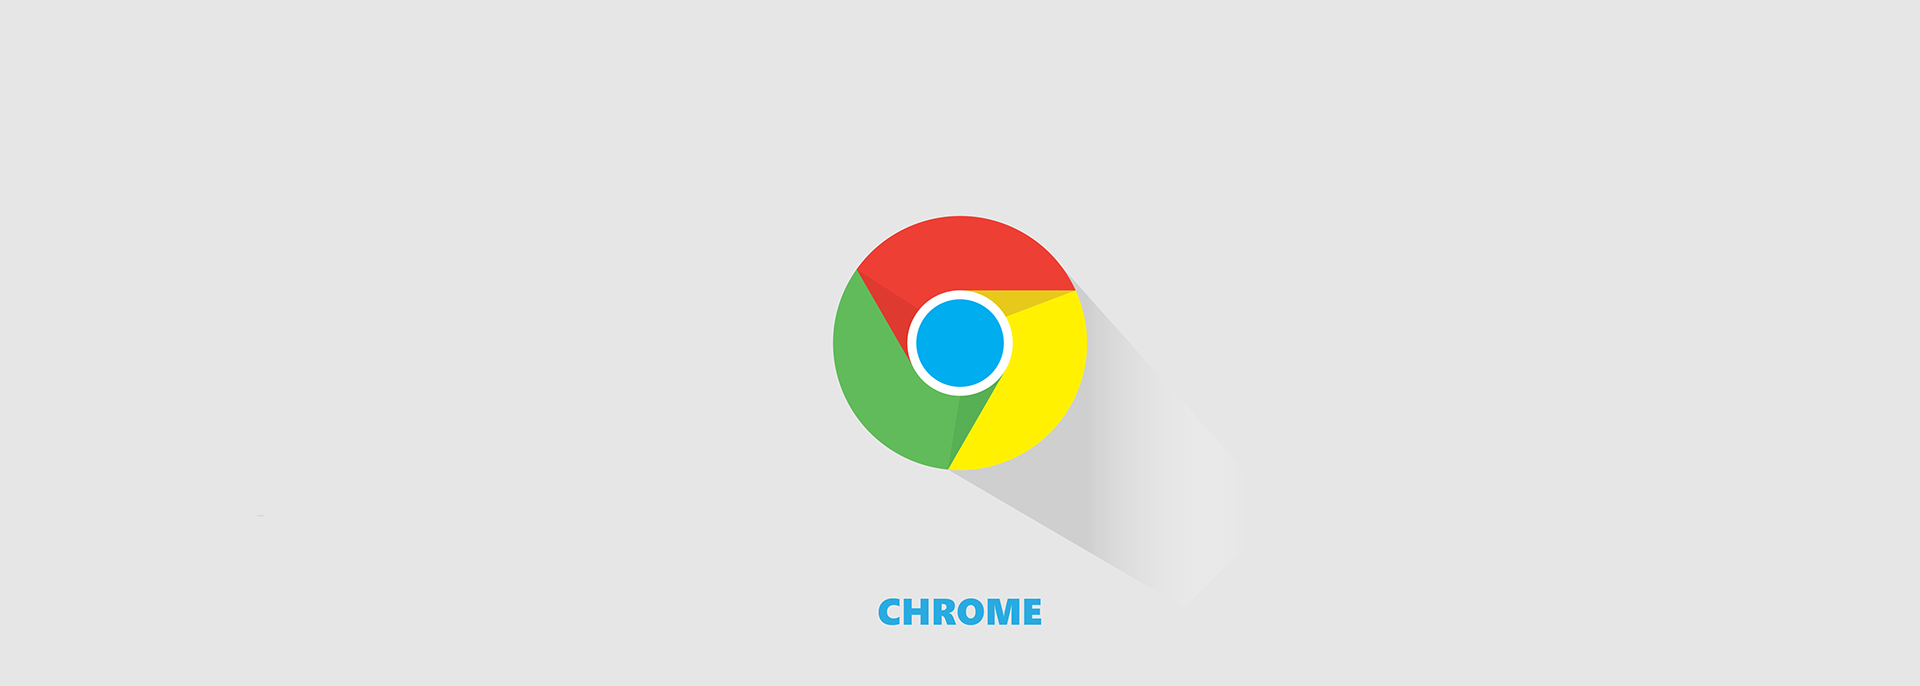 Хром в россии. OC Chrome os логотип. Chromium 49. OC Chrome os лого.